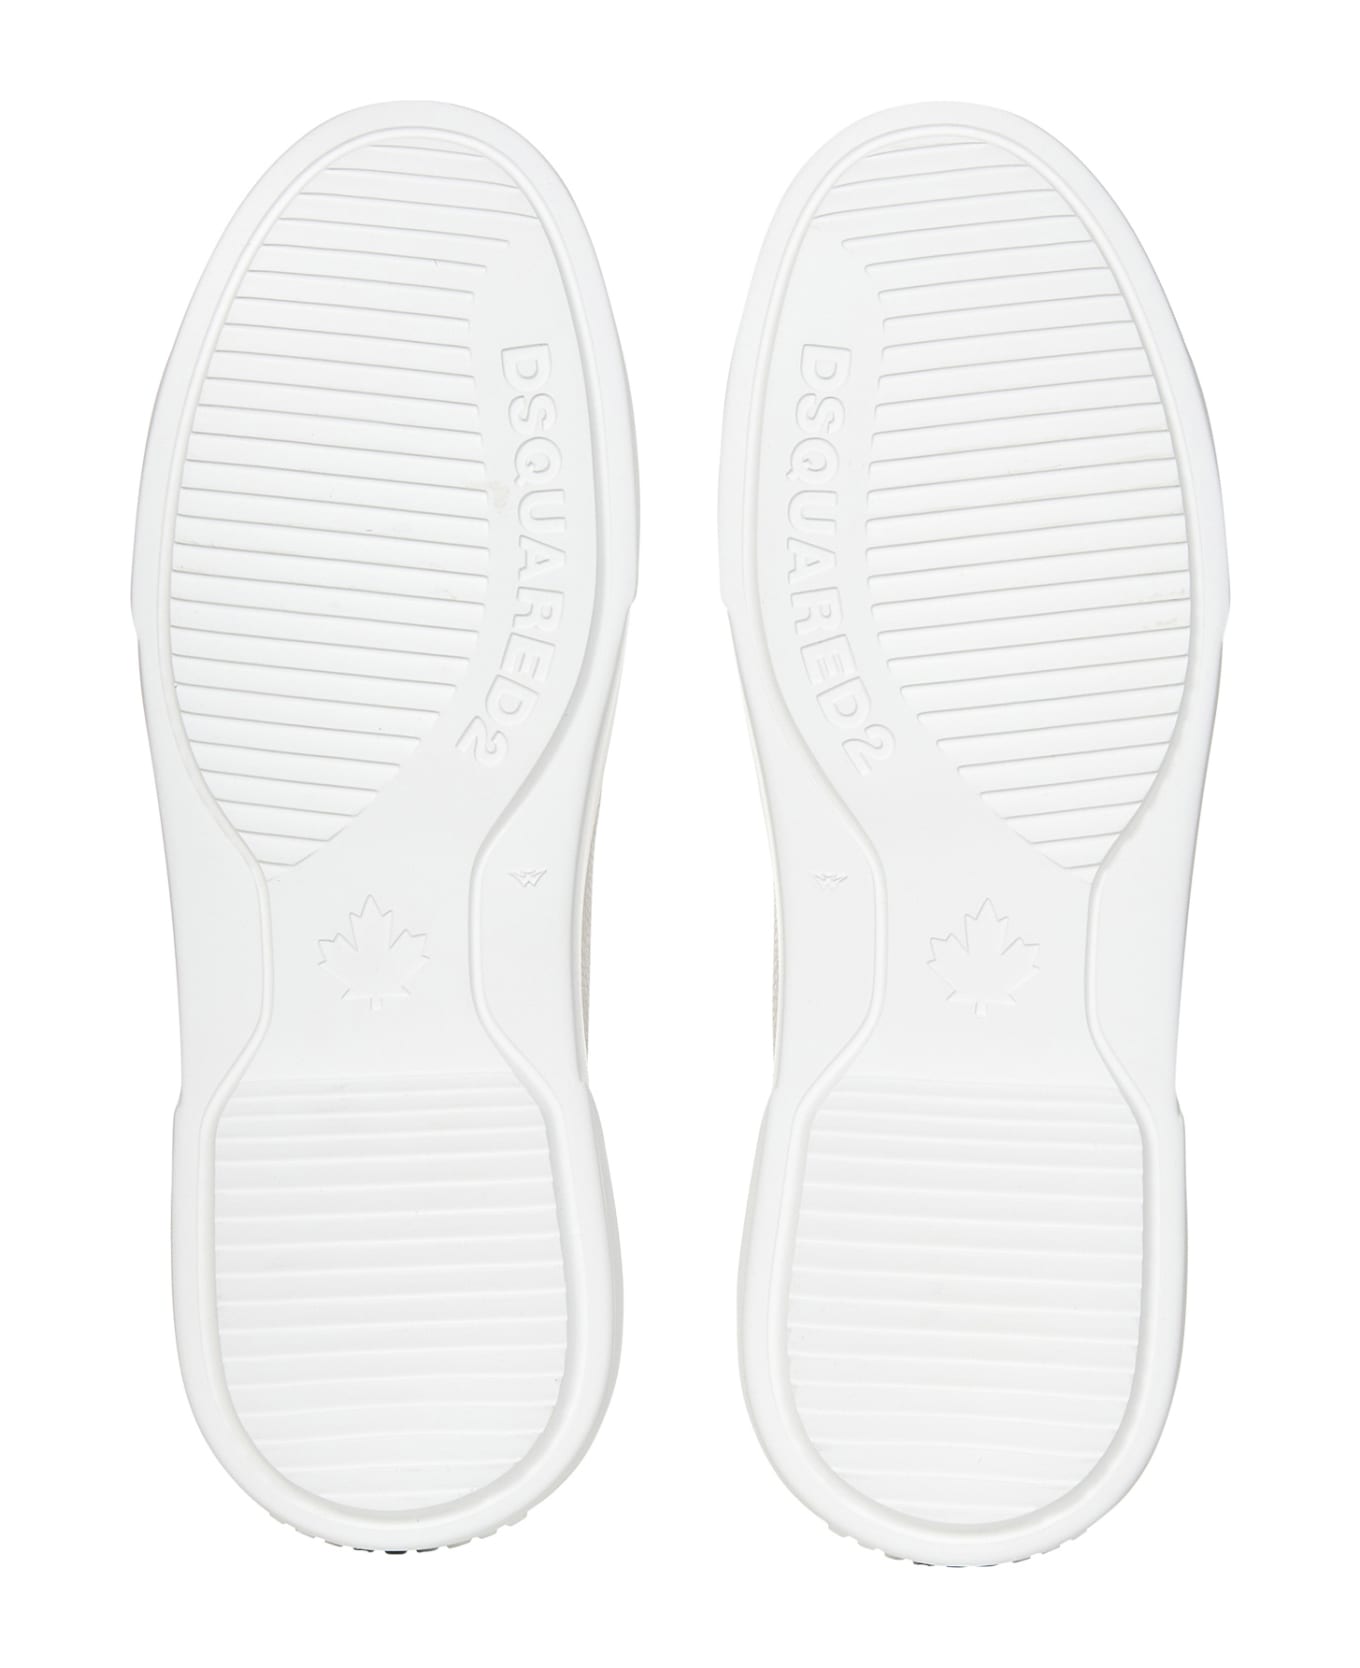 Dsquared2 Bumper Sneakers - White